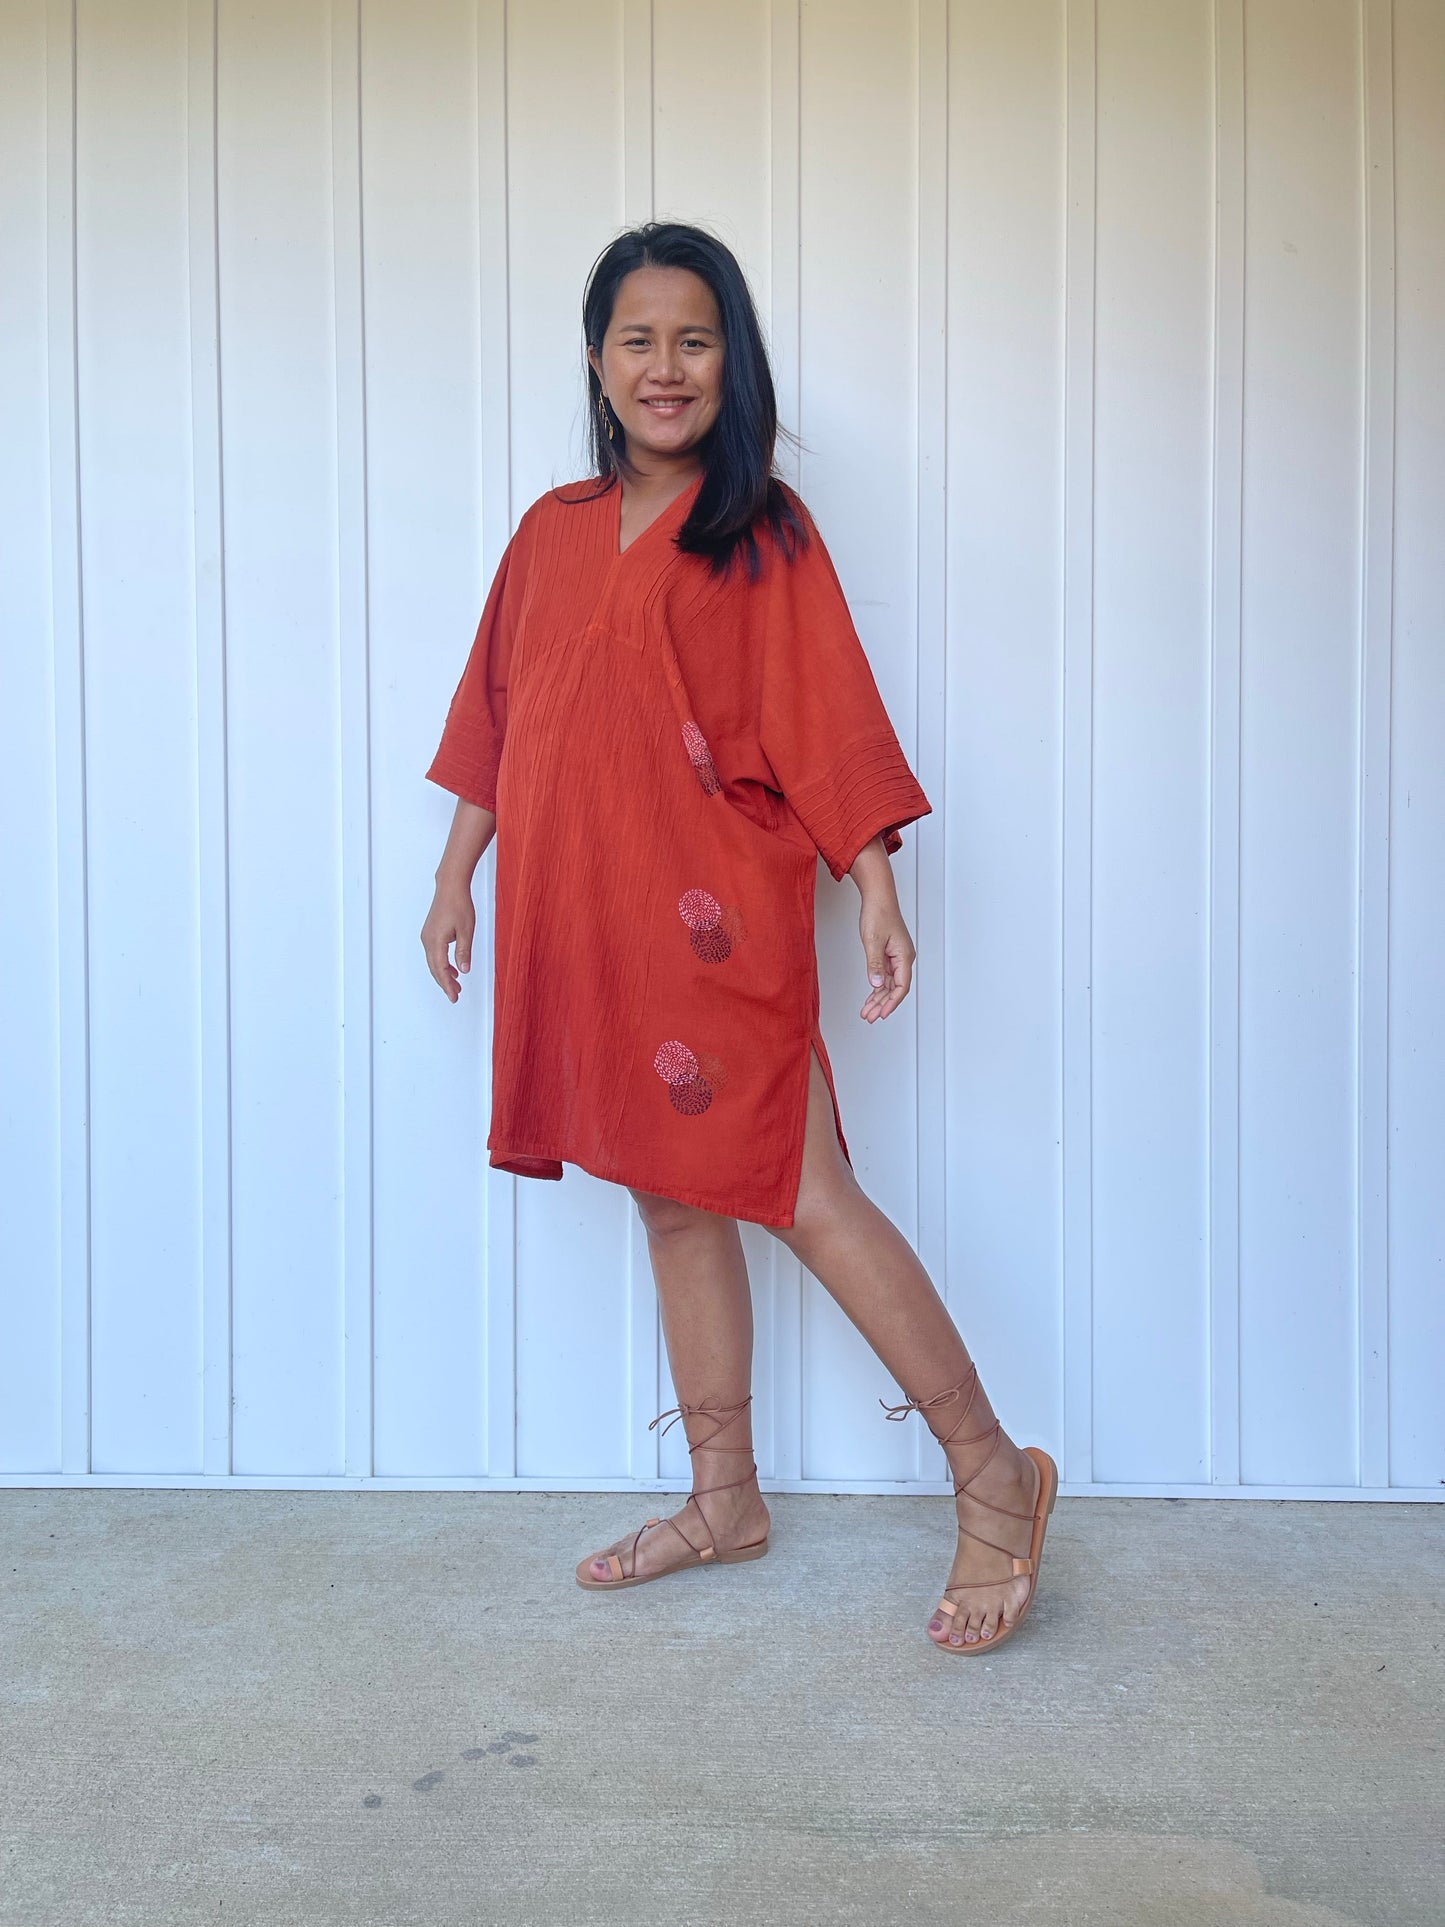 MALA handworks Miyu Midi Dress in Rust Orange and Hand Embroidery